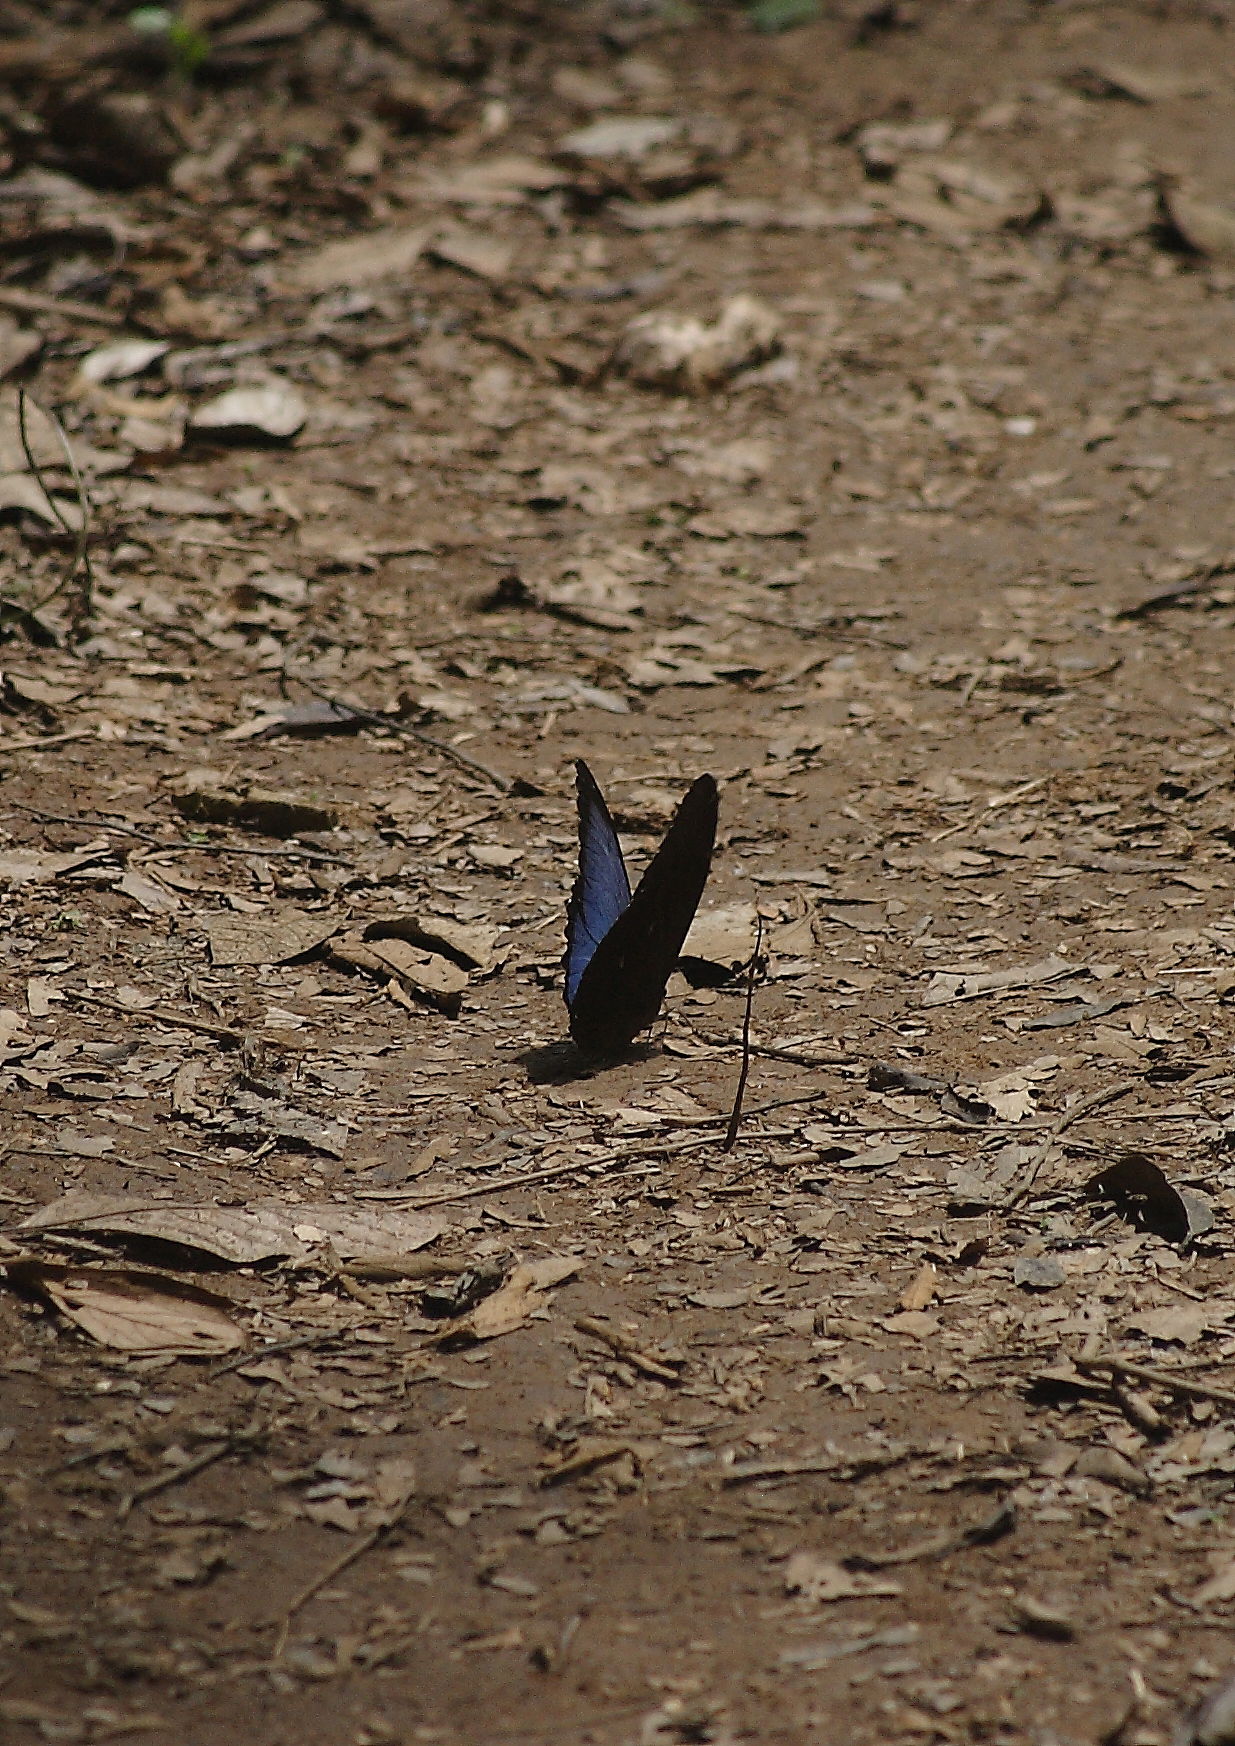 Blue Morph Butterfly